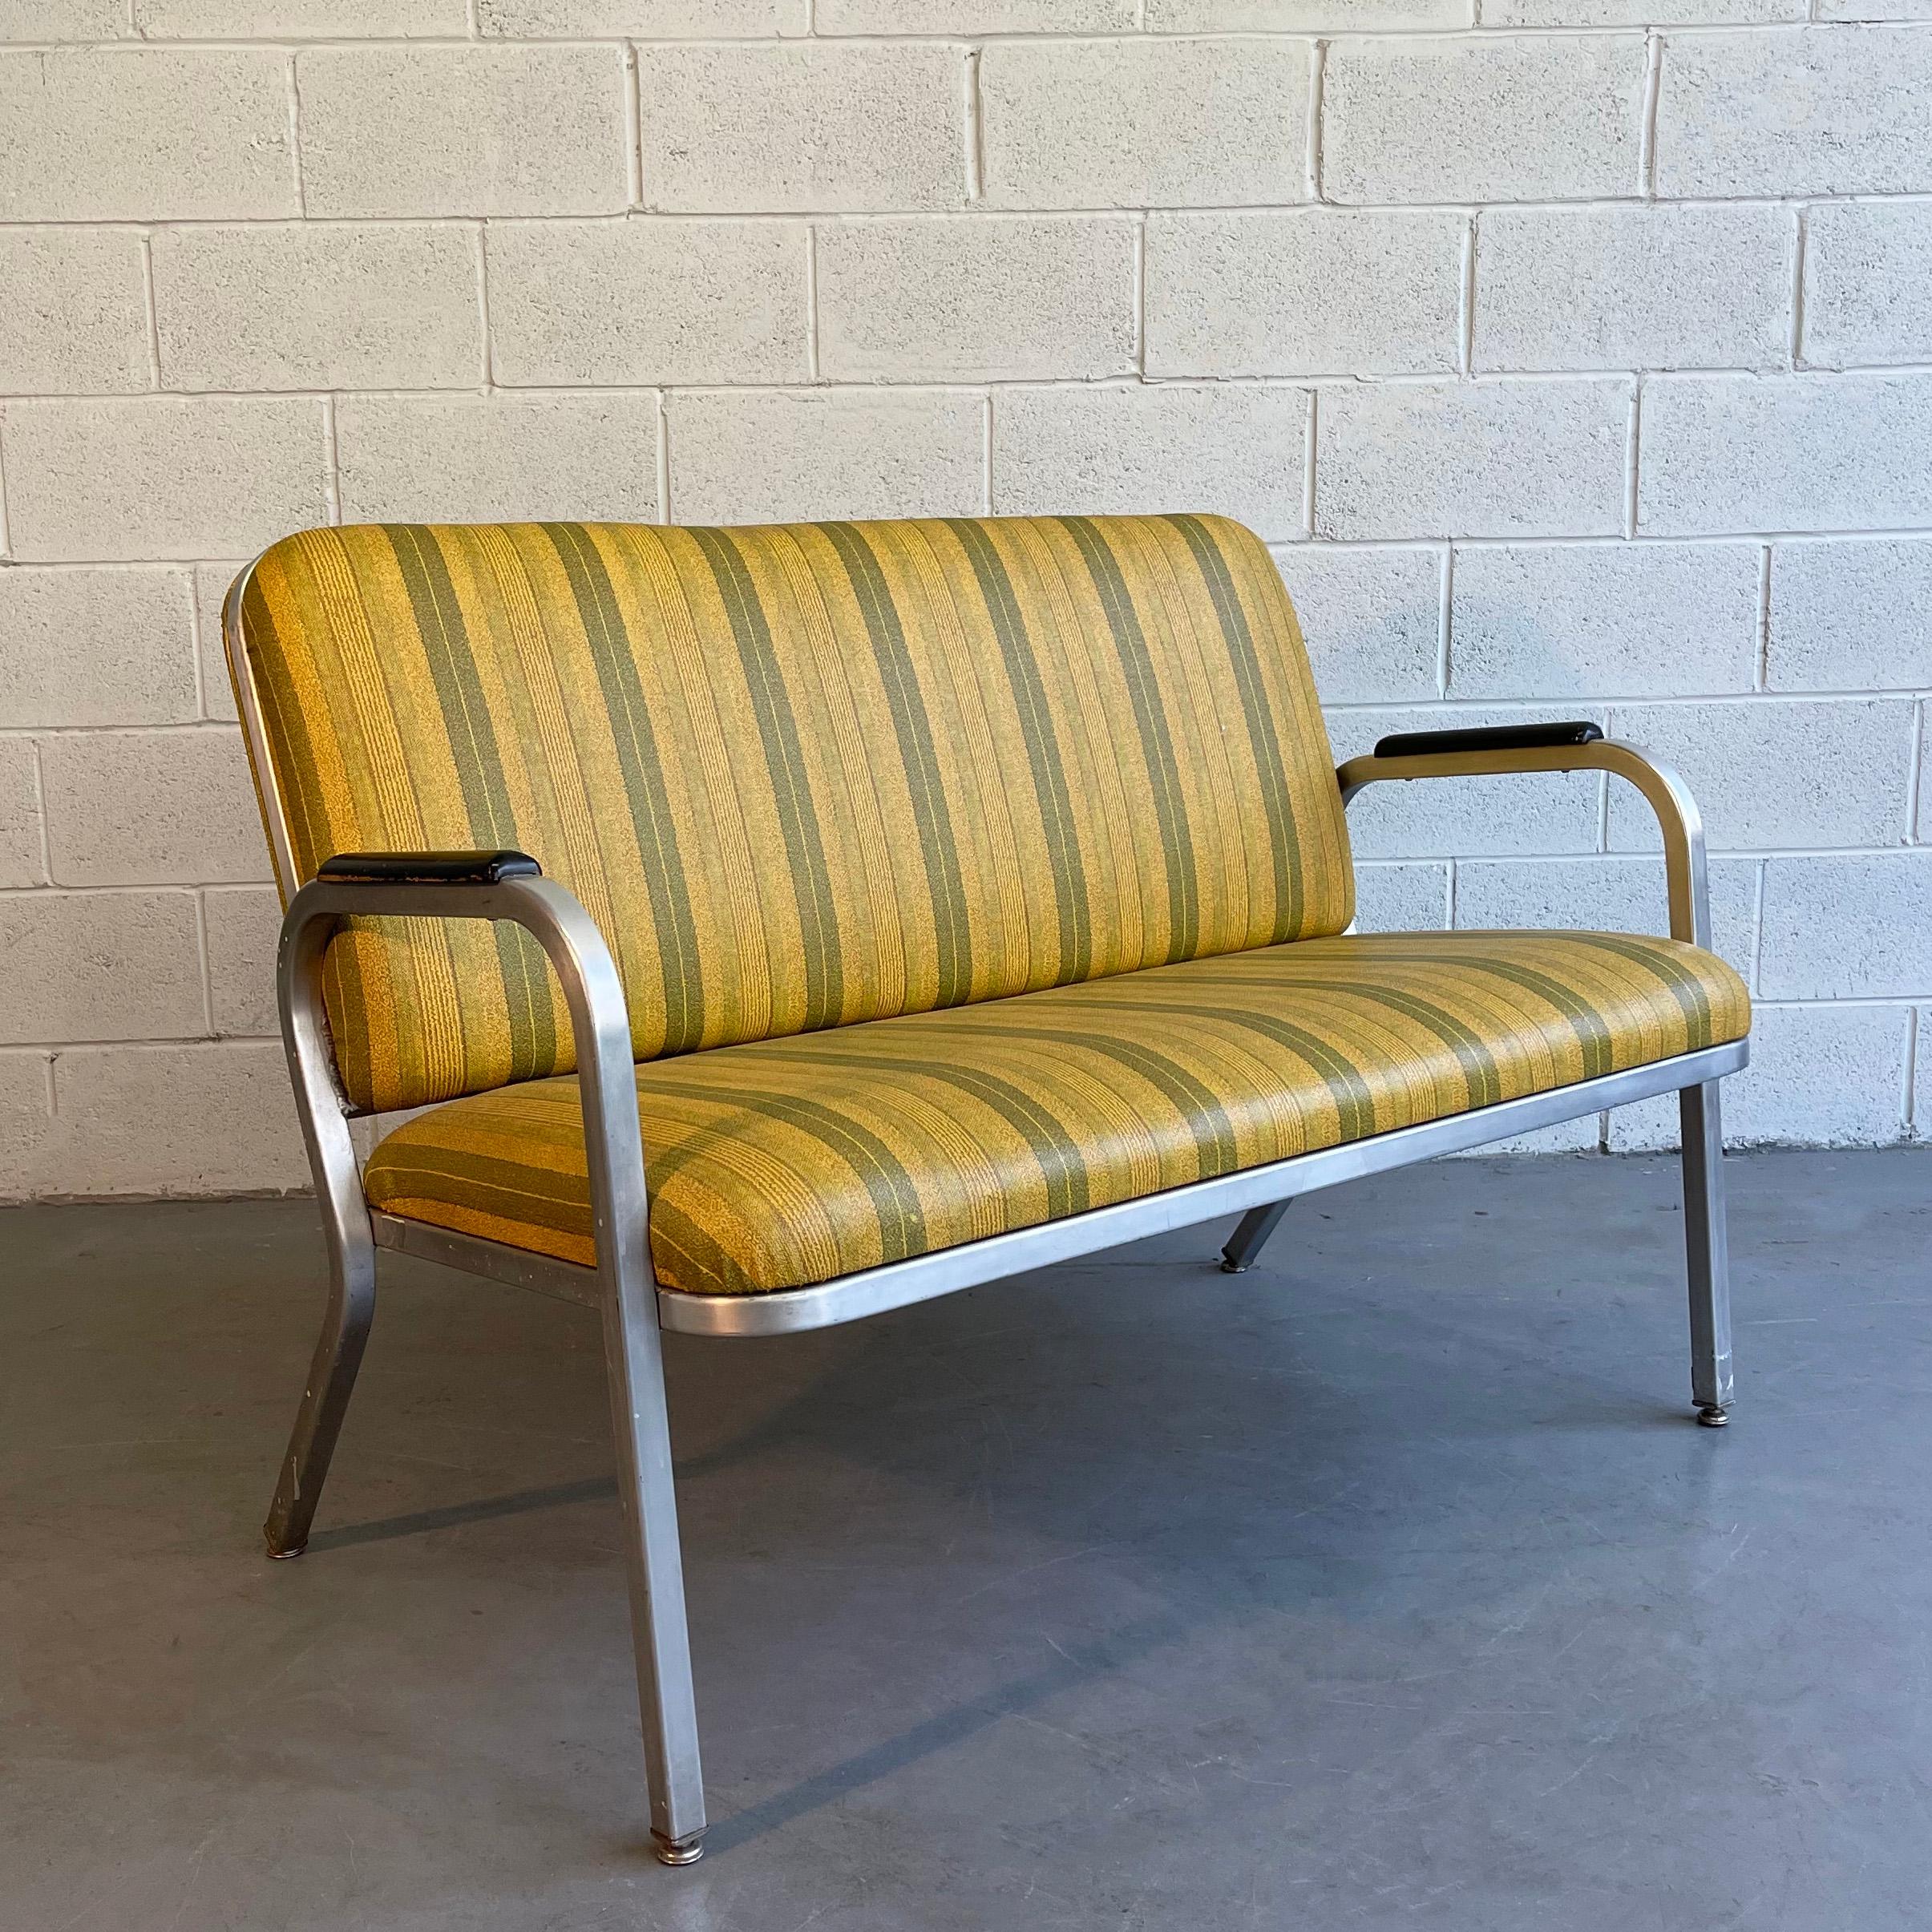 Le sofa loveseat du milieu du siècle, de l'âge de la machine, par GoodForm, The General Fireproofing Co., présente un cadre en aluminium profilé avec un revêtement en vinyle rayé et des accoudoirs en bois peint.